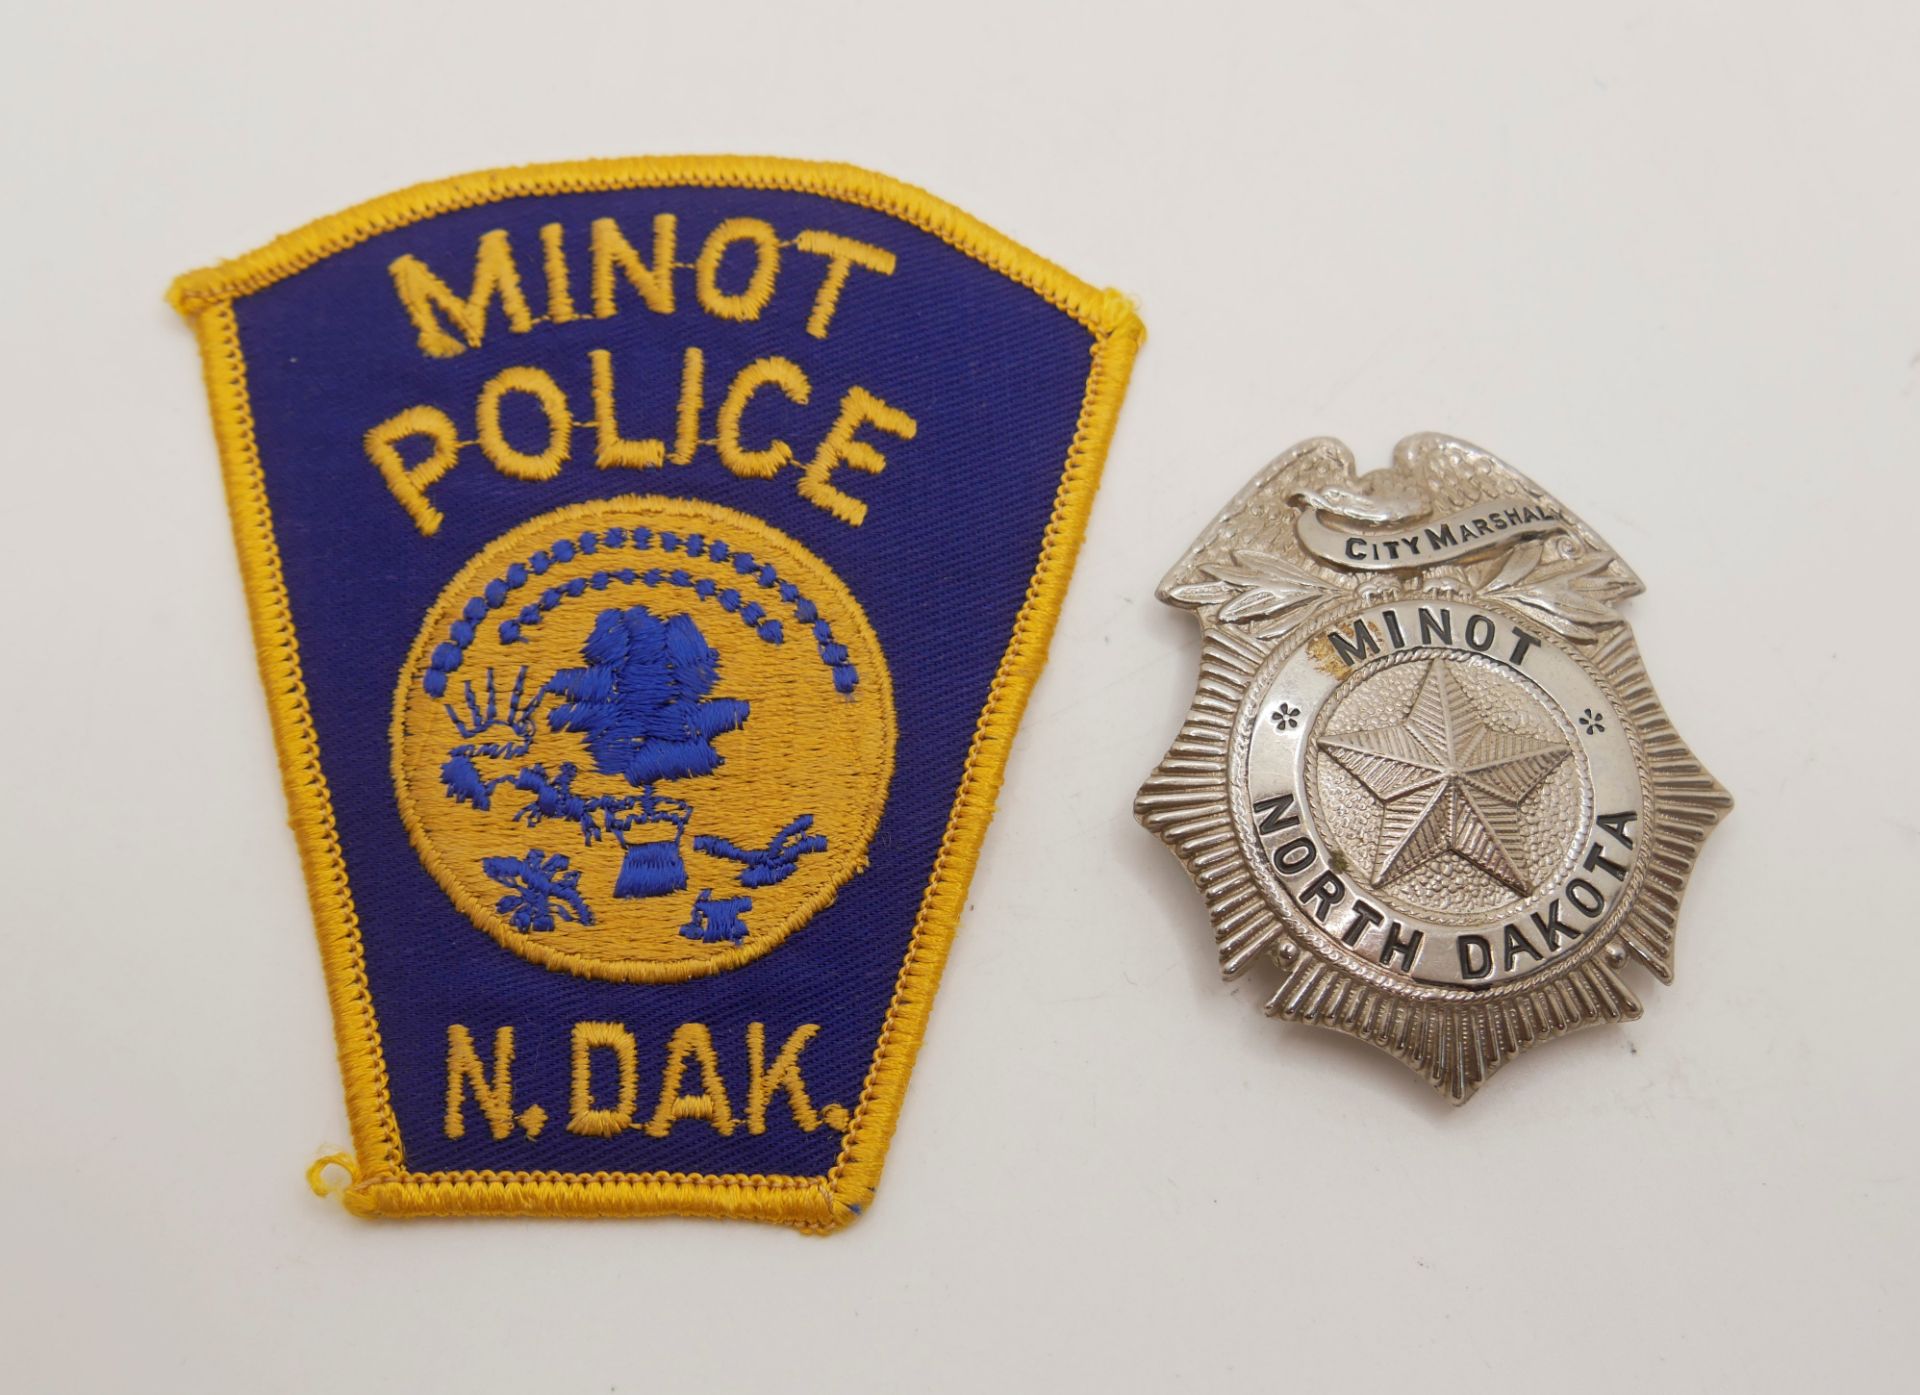 Aus Sammelauflösung! Aufnäher / Patches sowie 1 Marke "Minot Police North Dakota" insgesamt 2 Stück.